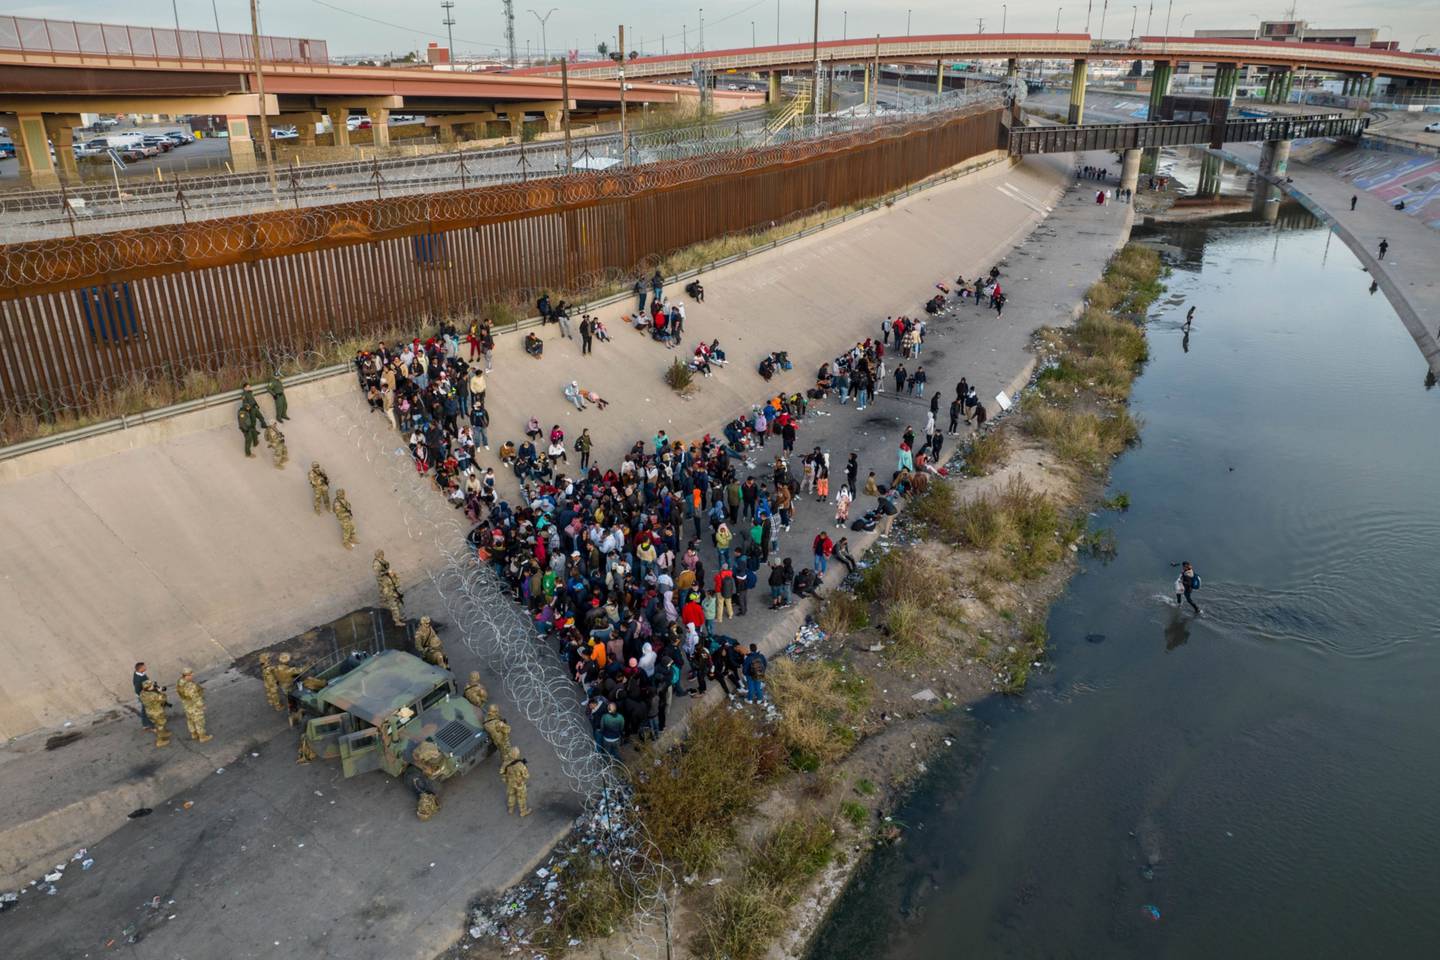 Estados Unidos observó durante casi todo diciembre un promedio de 8.000 migrantes irregulares cada día en la frontera suroeste con México.